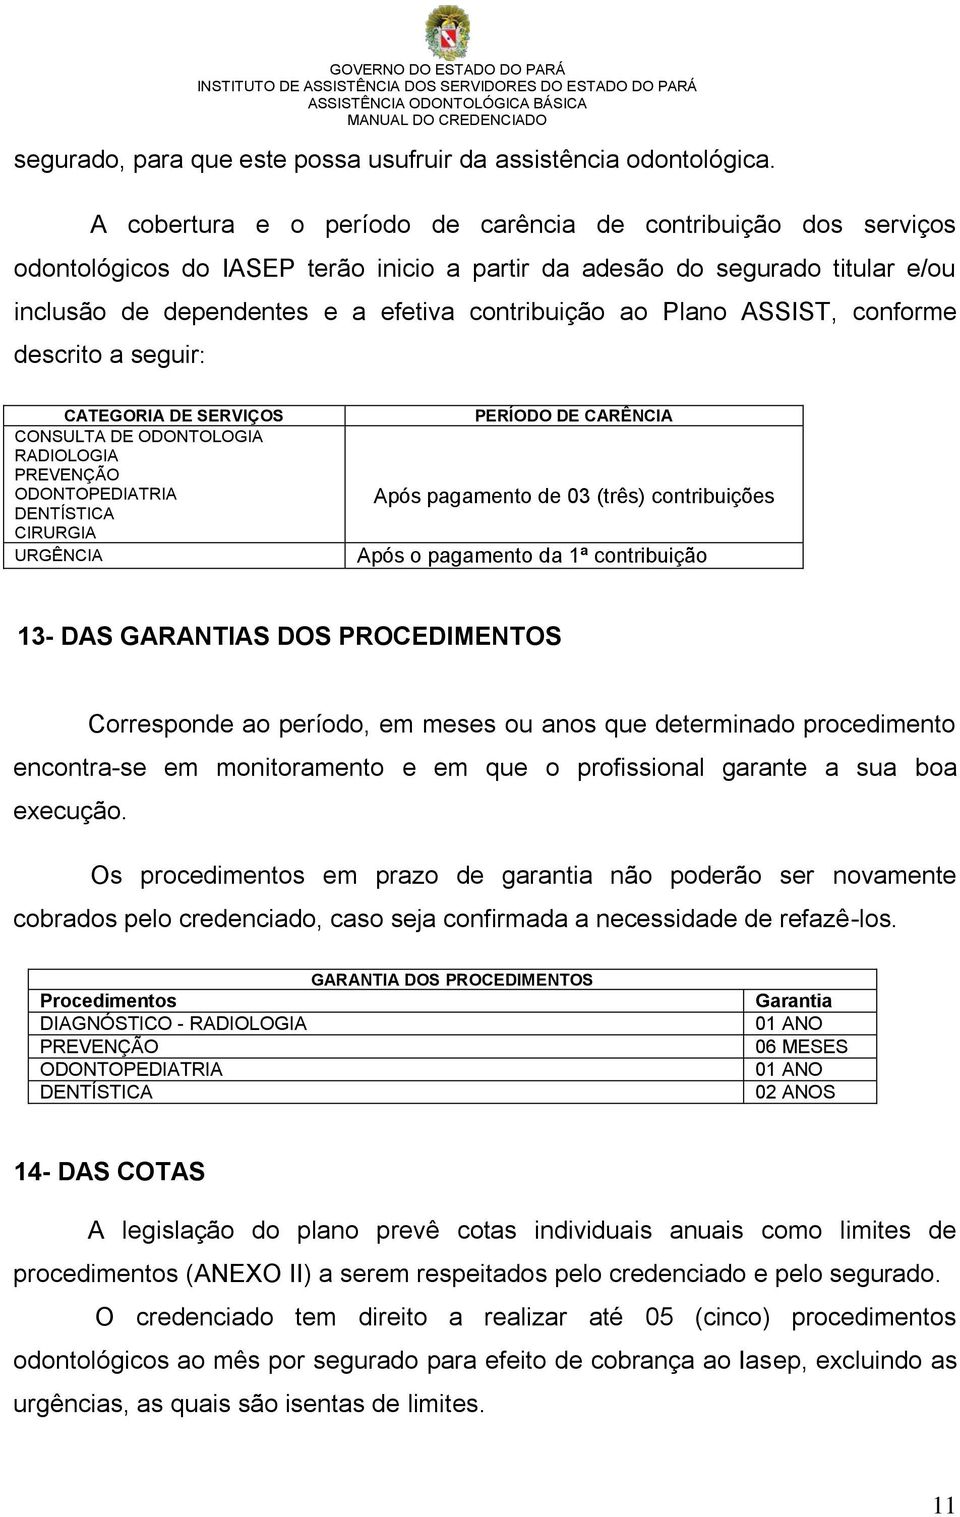 Plano ASSIST, conforme descrito a seguir: CATEGORIA DE SERVIÇOS CONSULTA DE ODONTOLOGIA RADIOLOGIA PREVENÇÃO ODONTOPEDIATRIA DENTÍSTICA CIRURGIA URGÊNCIA PERÍODO DE CARÊNCIA Após pagamento de 03